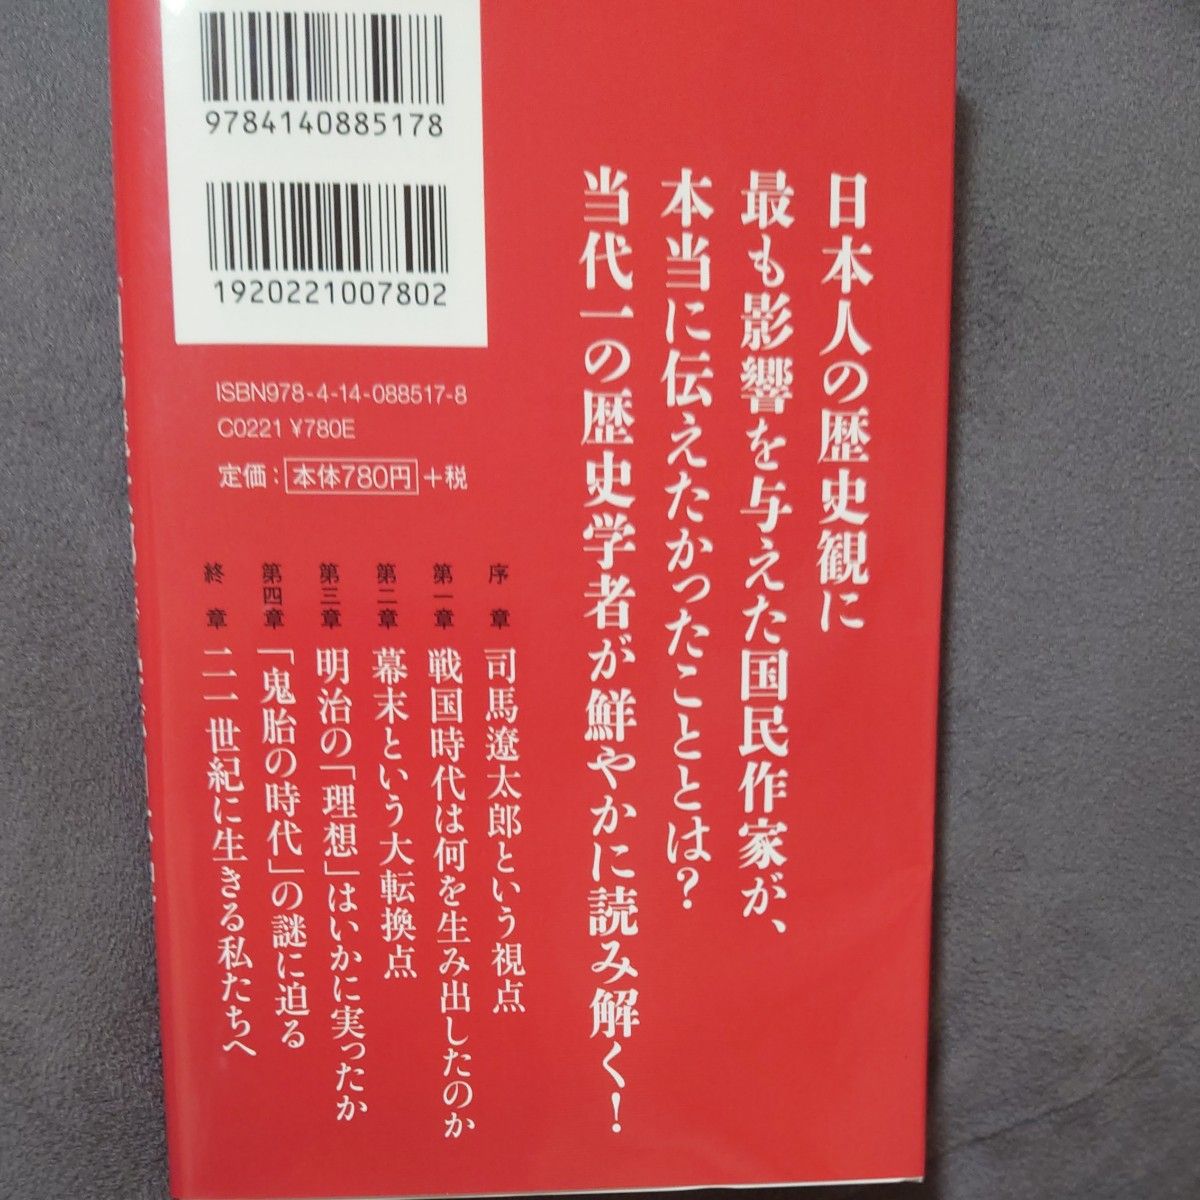 司馬遼太郎で学ぶ日本史